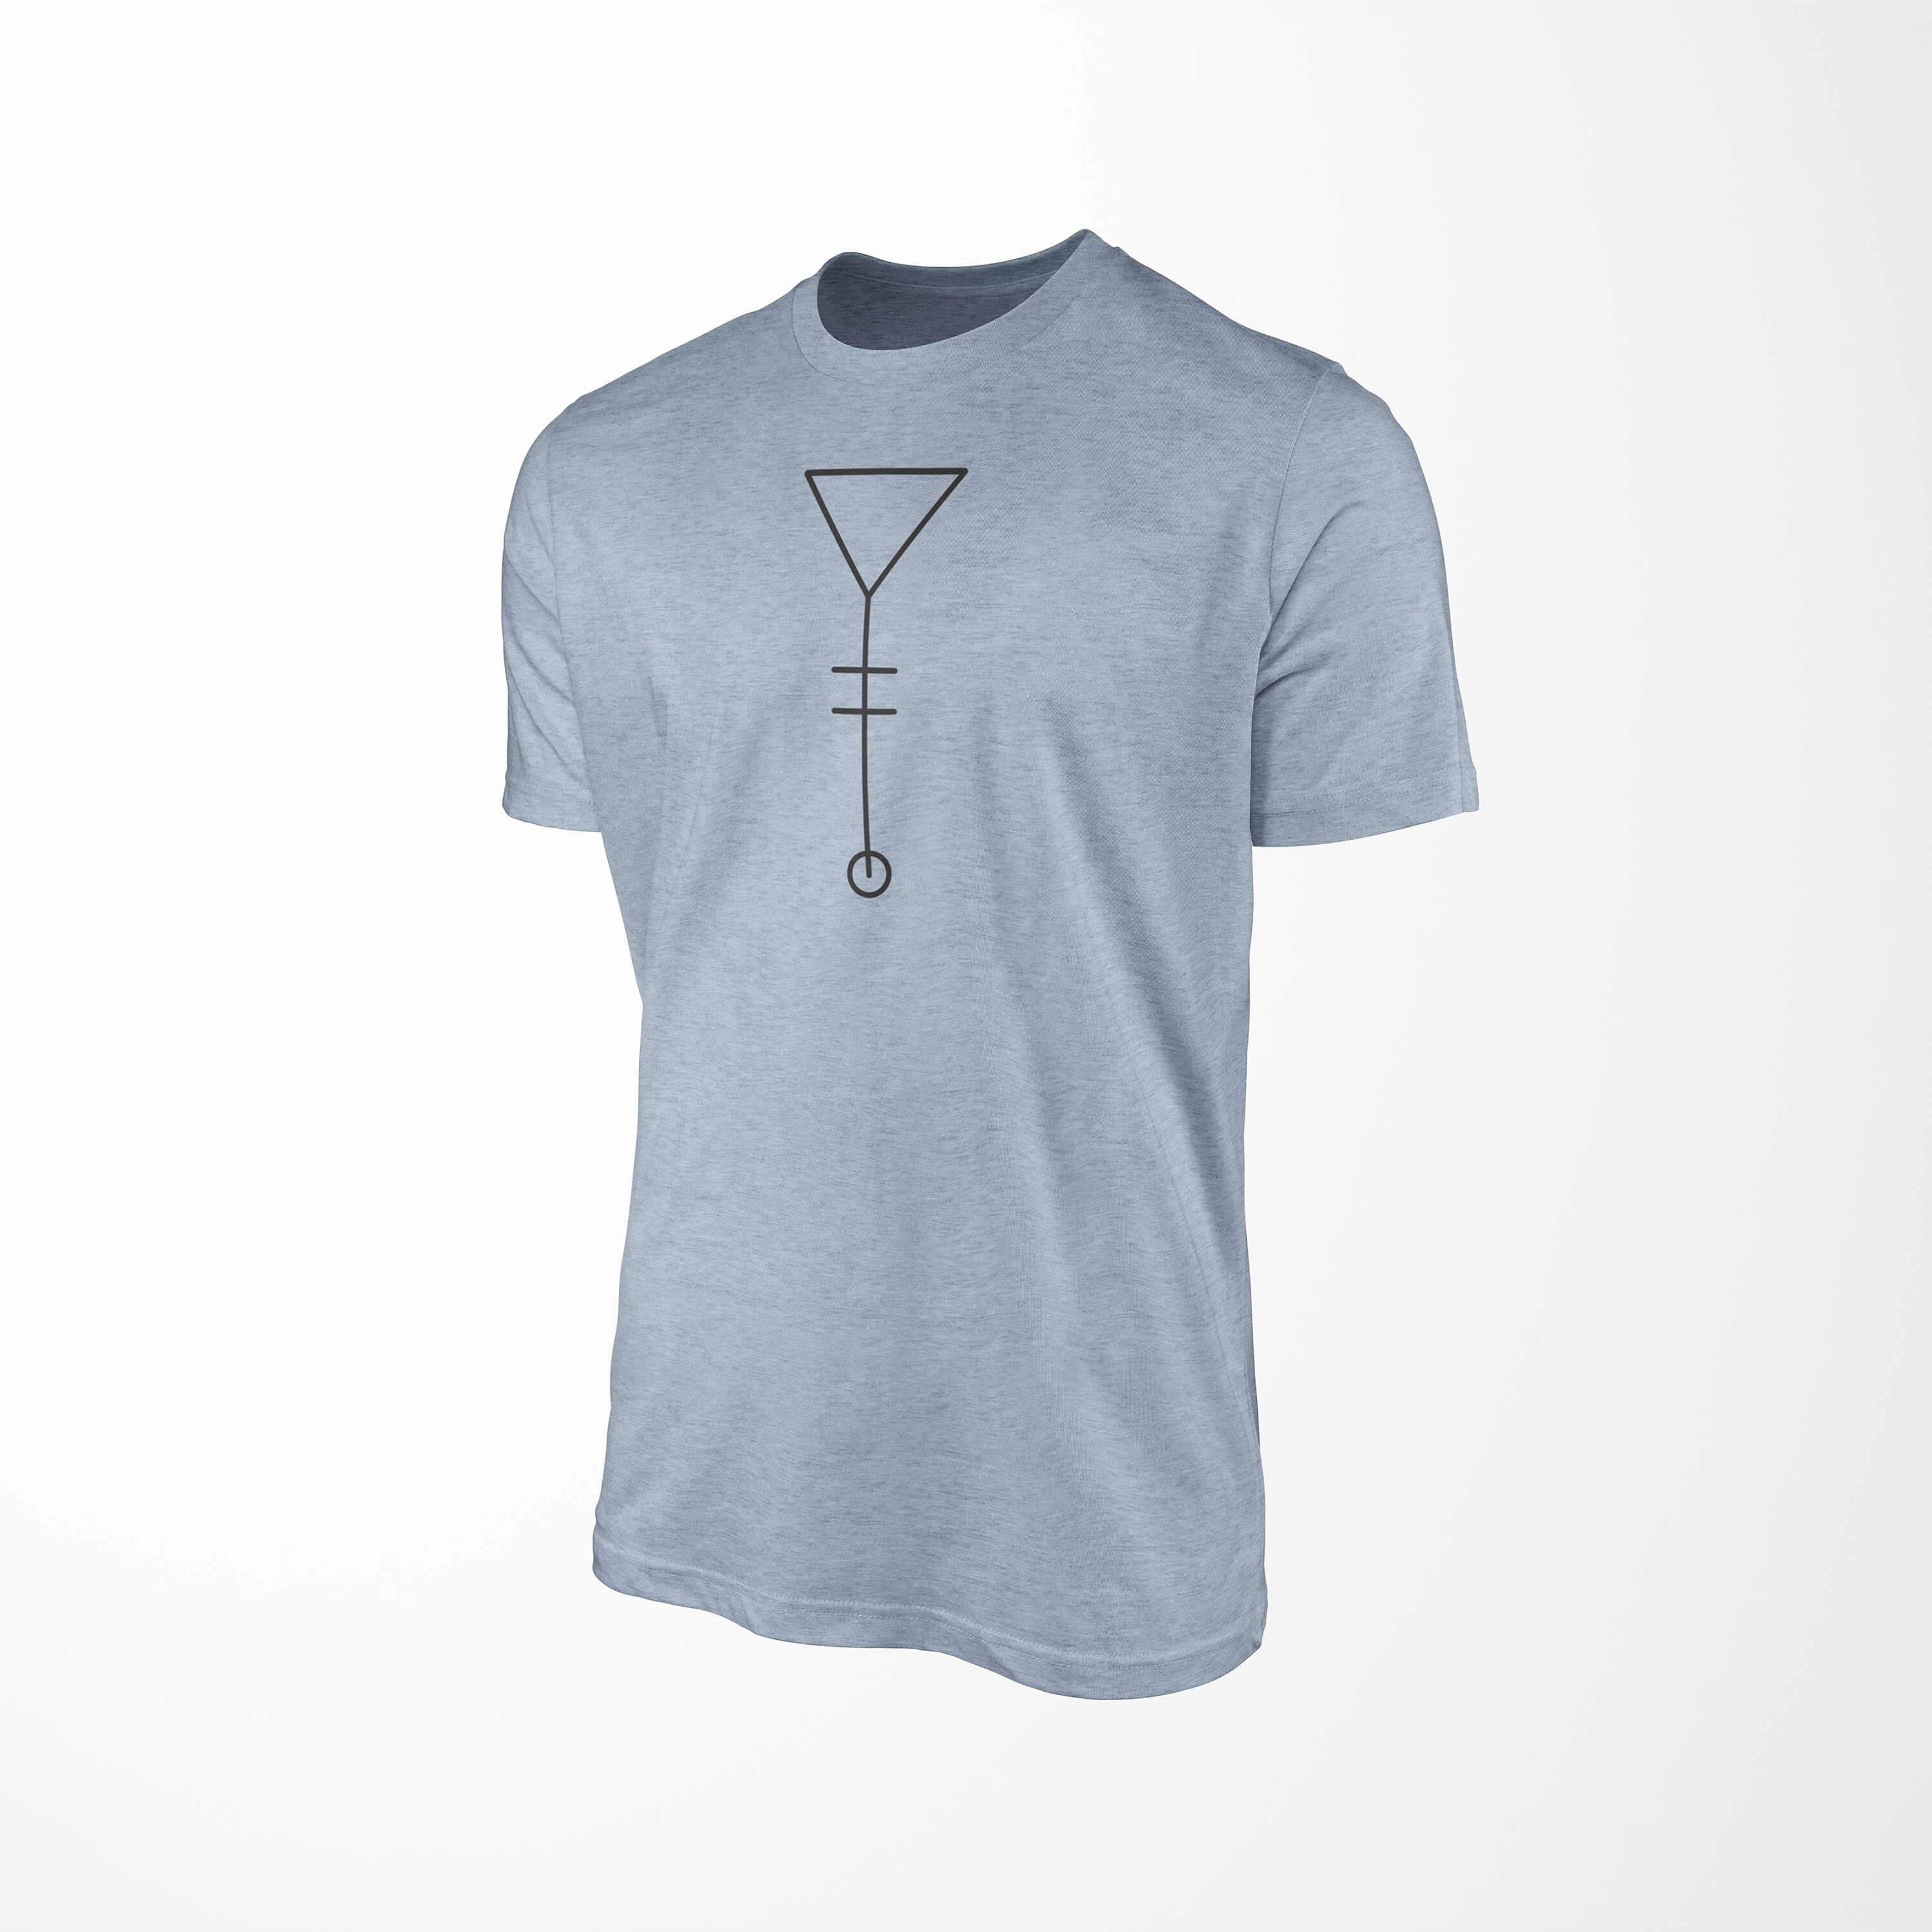 Alchemy T-Shirt Sinus angenehmer Tragekomfort Premium Stonewash Denim feine Serie No.0024 Symbole Art T-Shirt Struktur